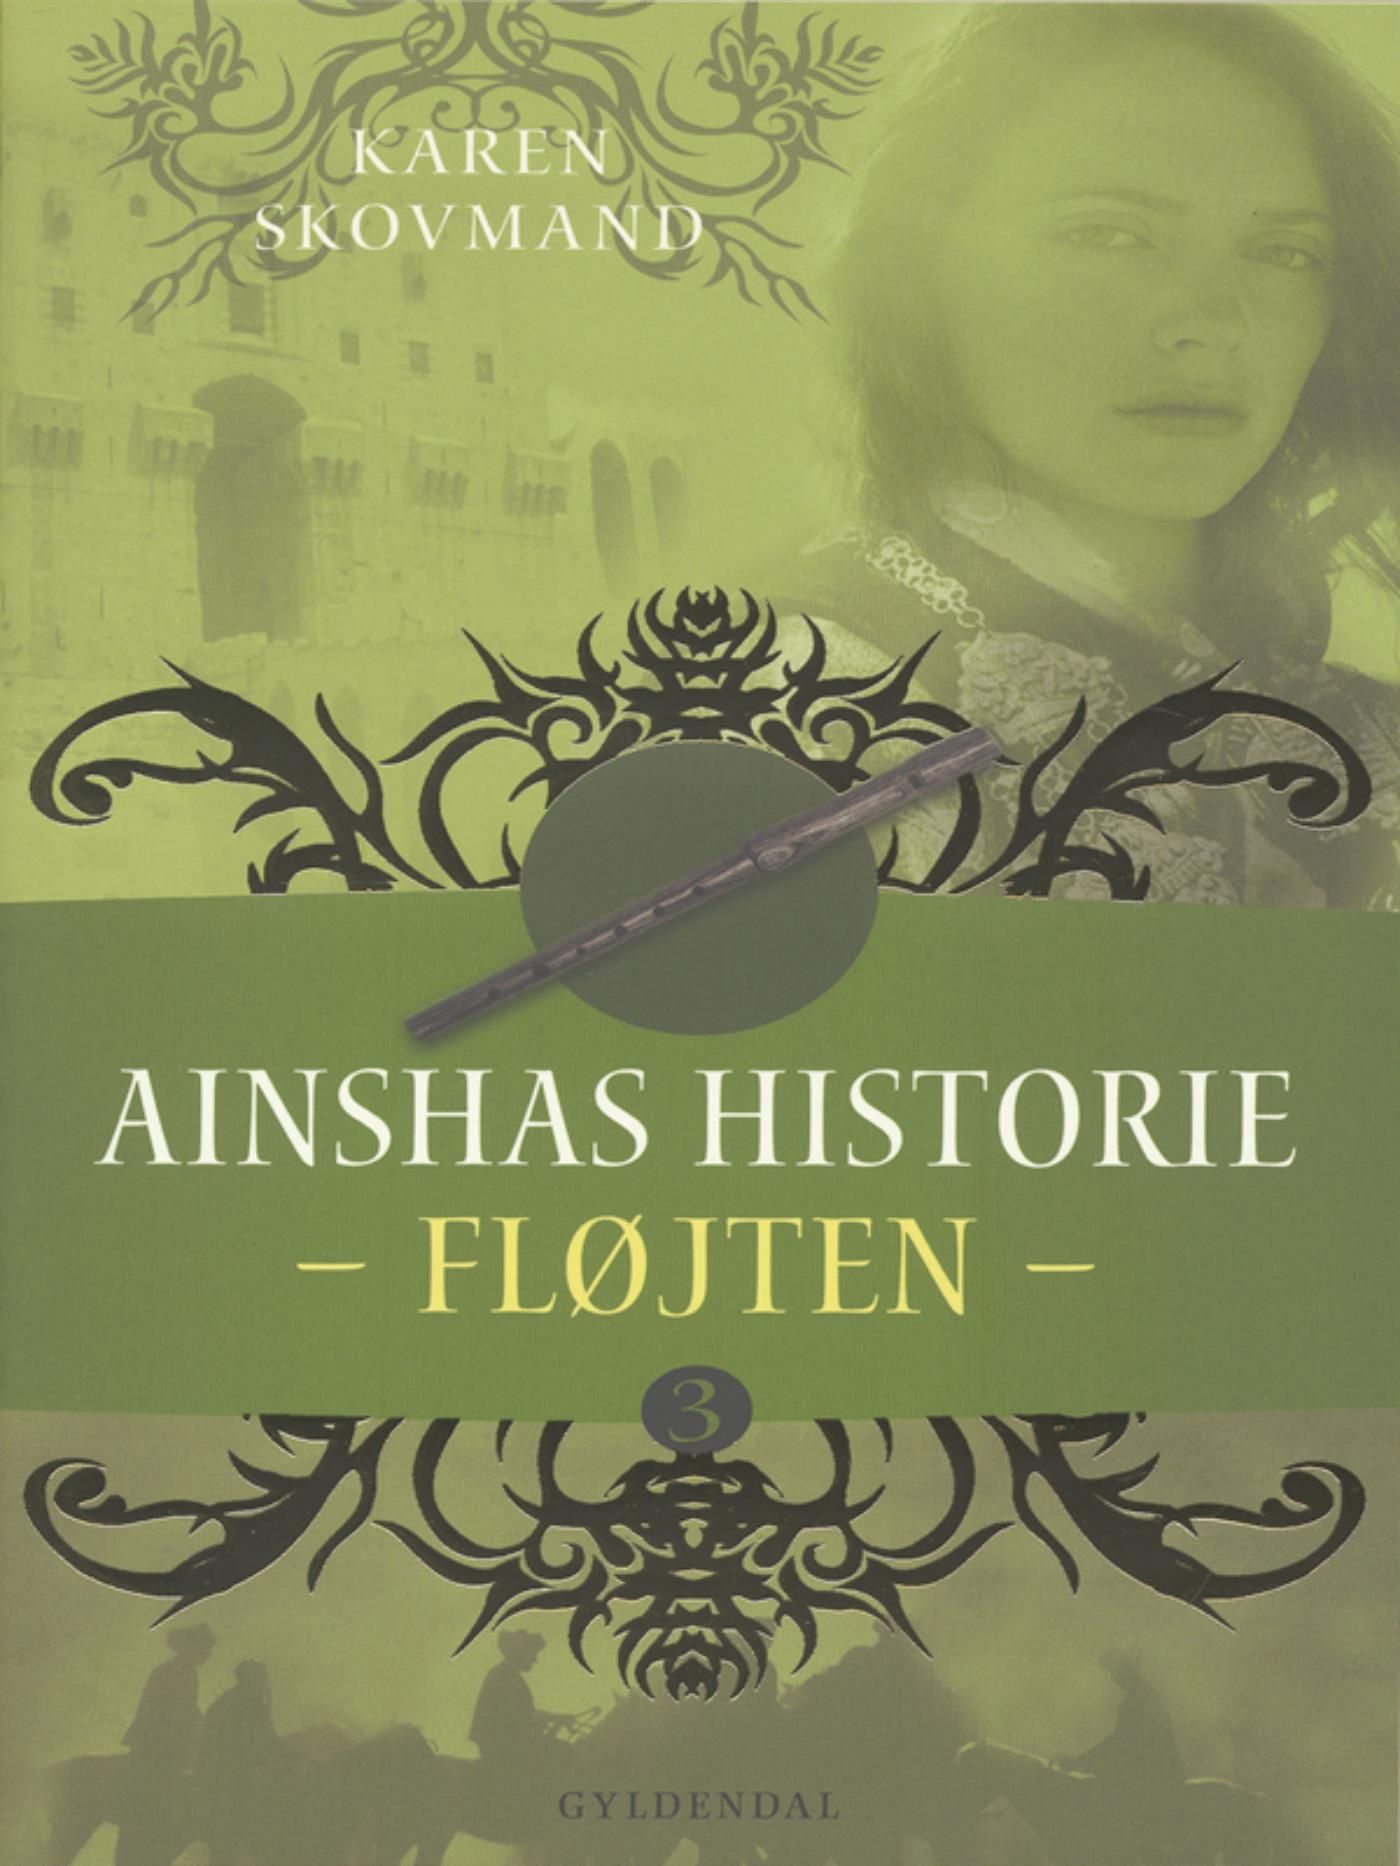 Ainshas historie 3 - Fløjten, eBook by Karen Skovmand Jensen